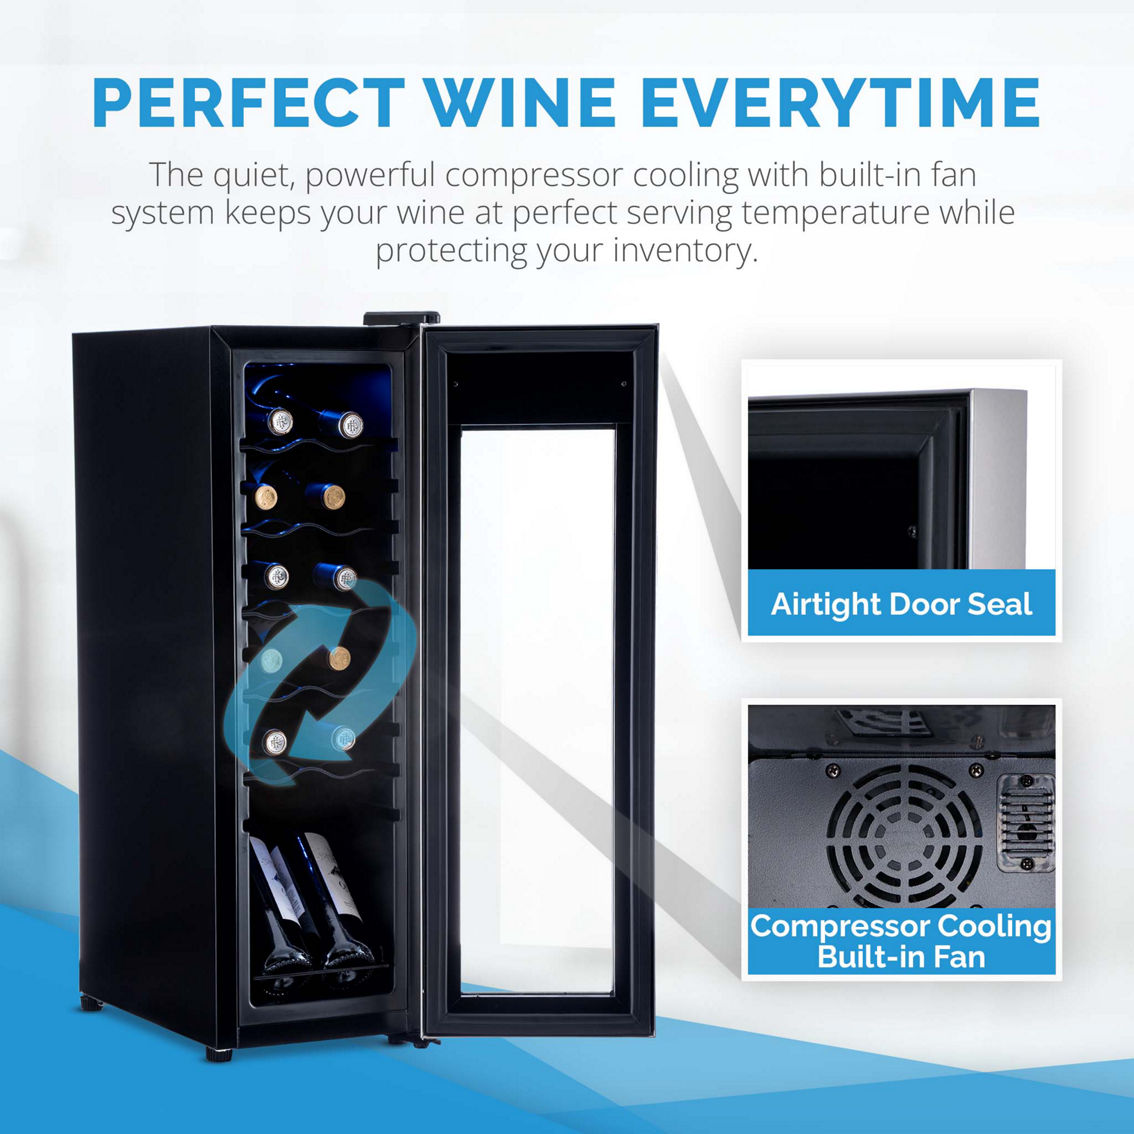 NewAir 12 Bottle Wine Cooler Refrigerator - Image 6 of 9